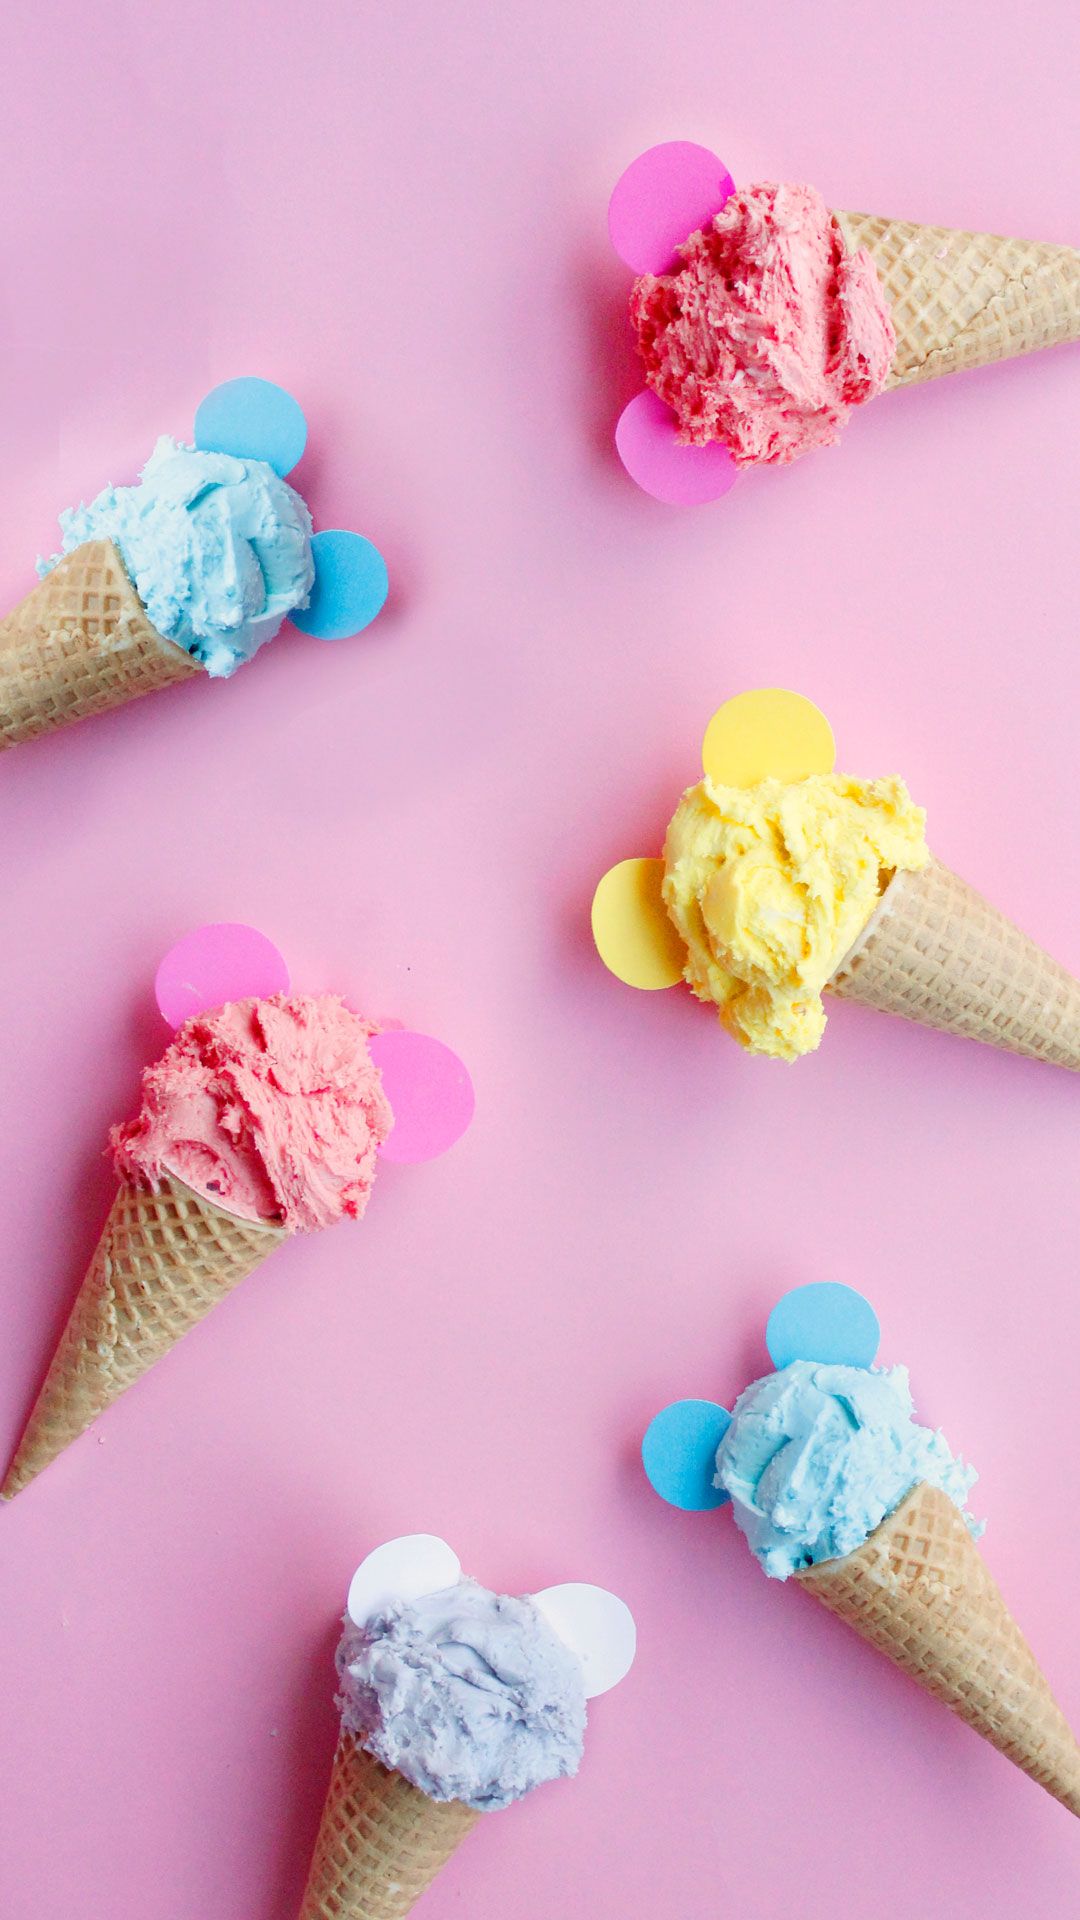 عکس بستنی قیفی های رنگی میکی موسی برای نمای بیرونی کافه بستنی